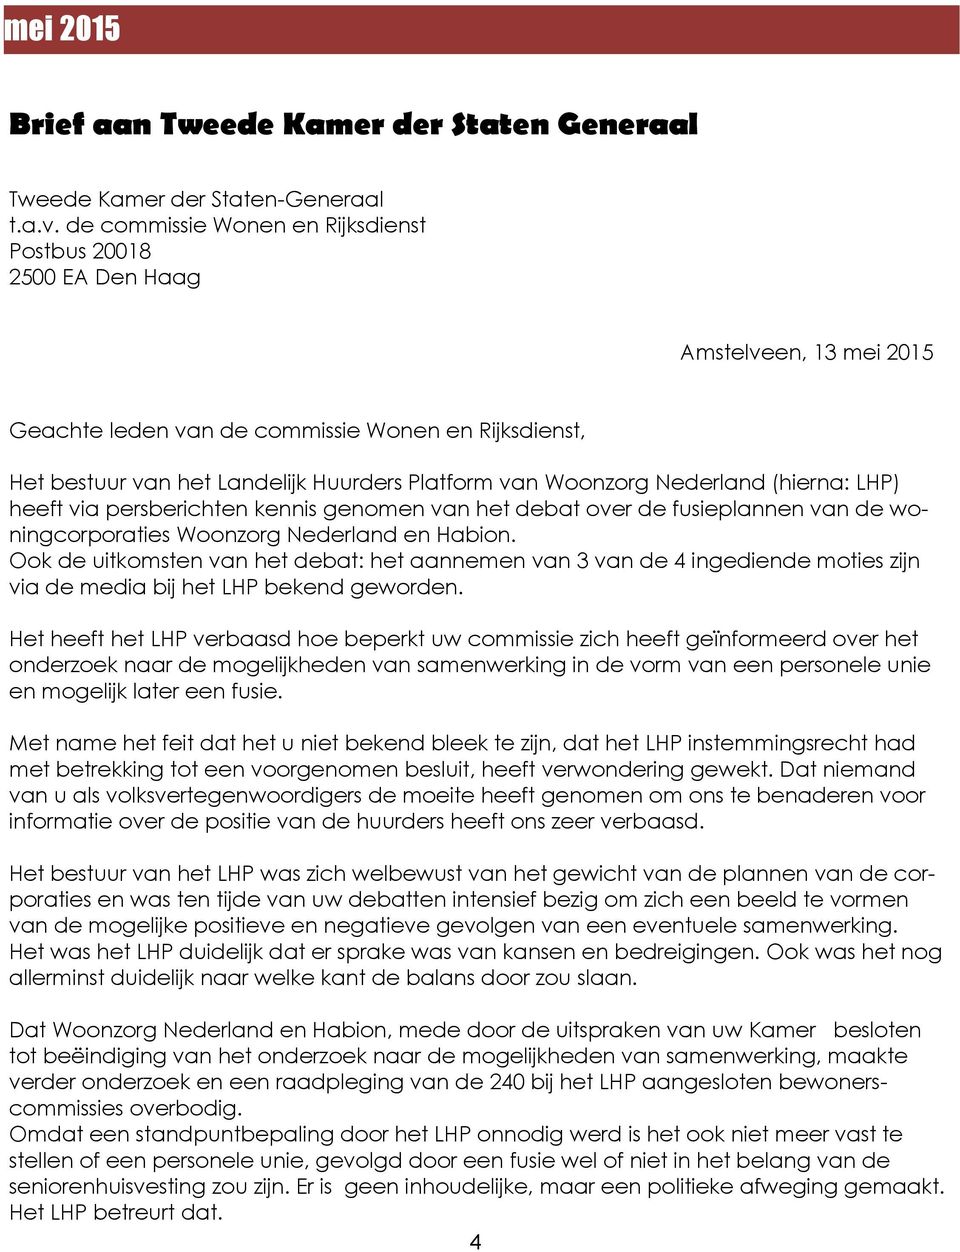 Woonzorg Nederland (hierna: LHP) heeft via persberichten kennis genomen van het debat over de fusieplannen van de woningcorporaties Woonzorg Nederland en Habion.